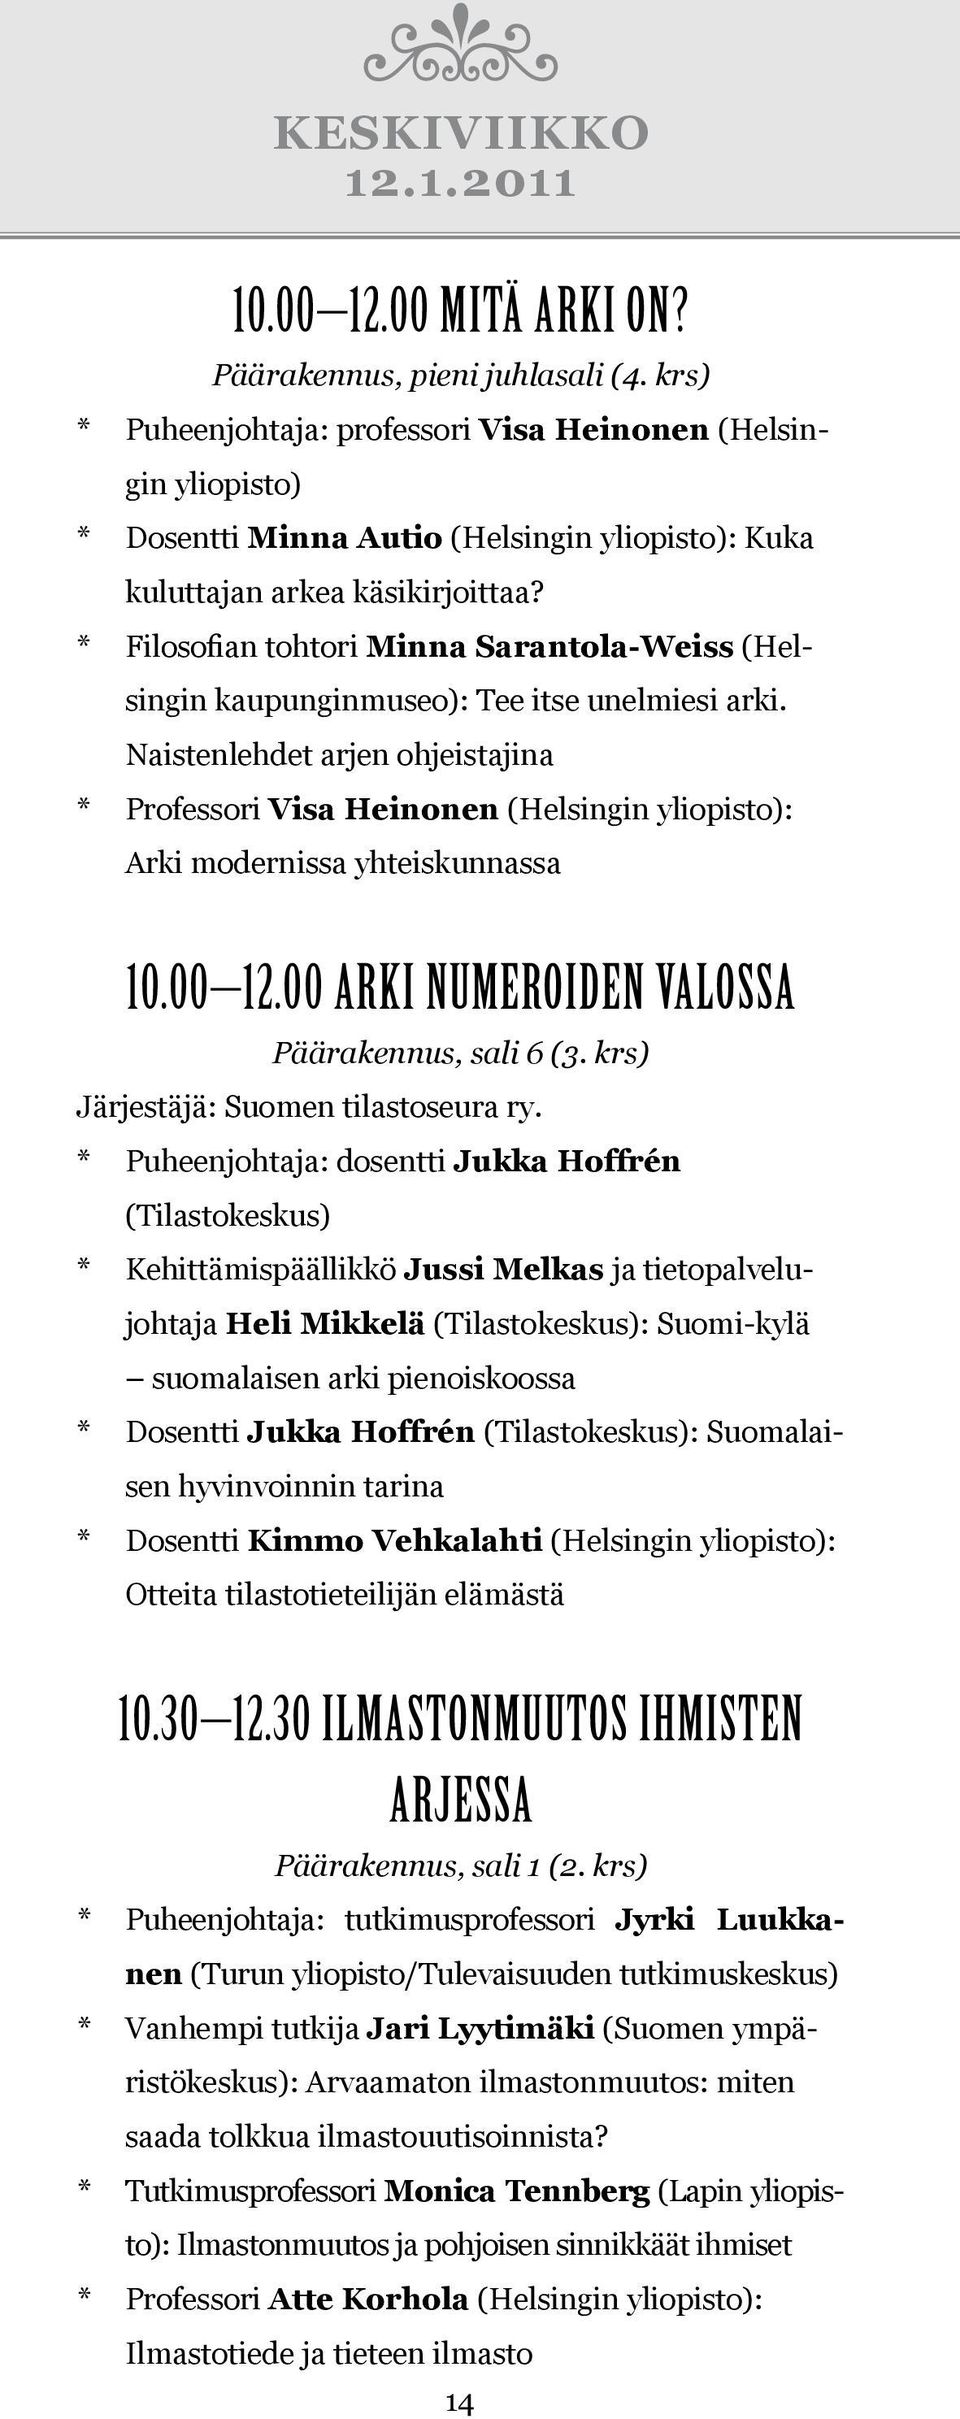 * Filosofian tohtori Minna Sarantola-Weiss (Helsingin kaupunginmuseo): Tee itse unelmiesi arki.